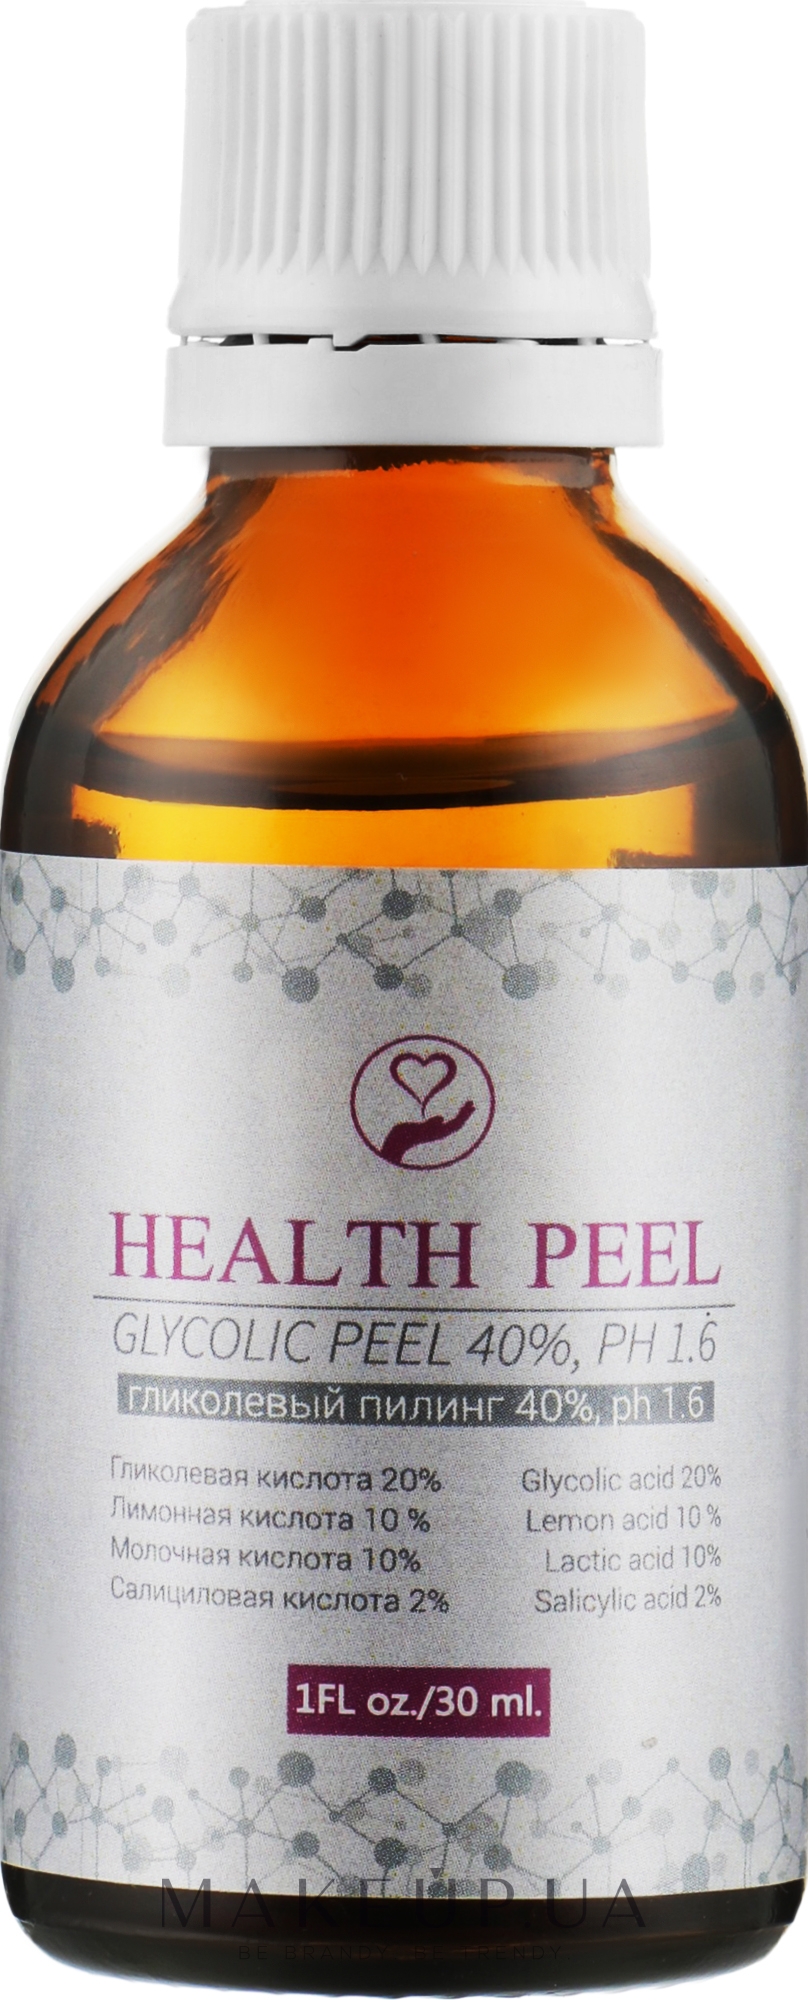 Гліколевий пілінг 40% - Health Peel Glycolic Peel, pH 1.6 — фото 30ml